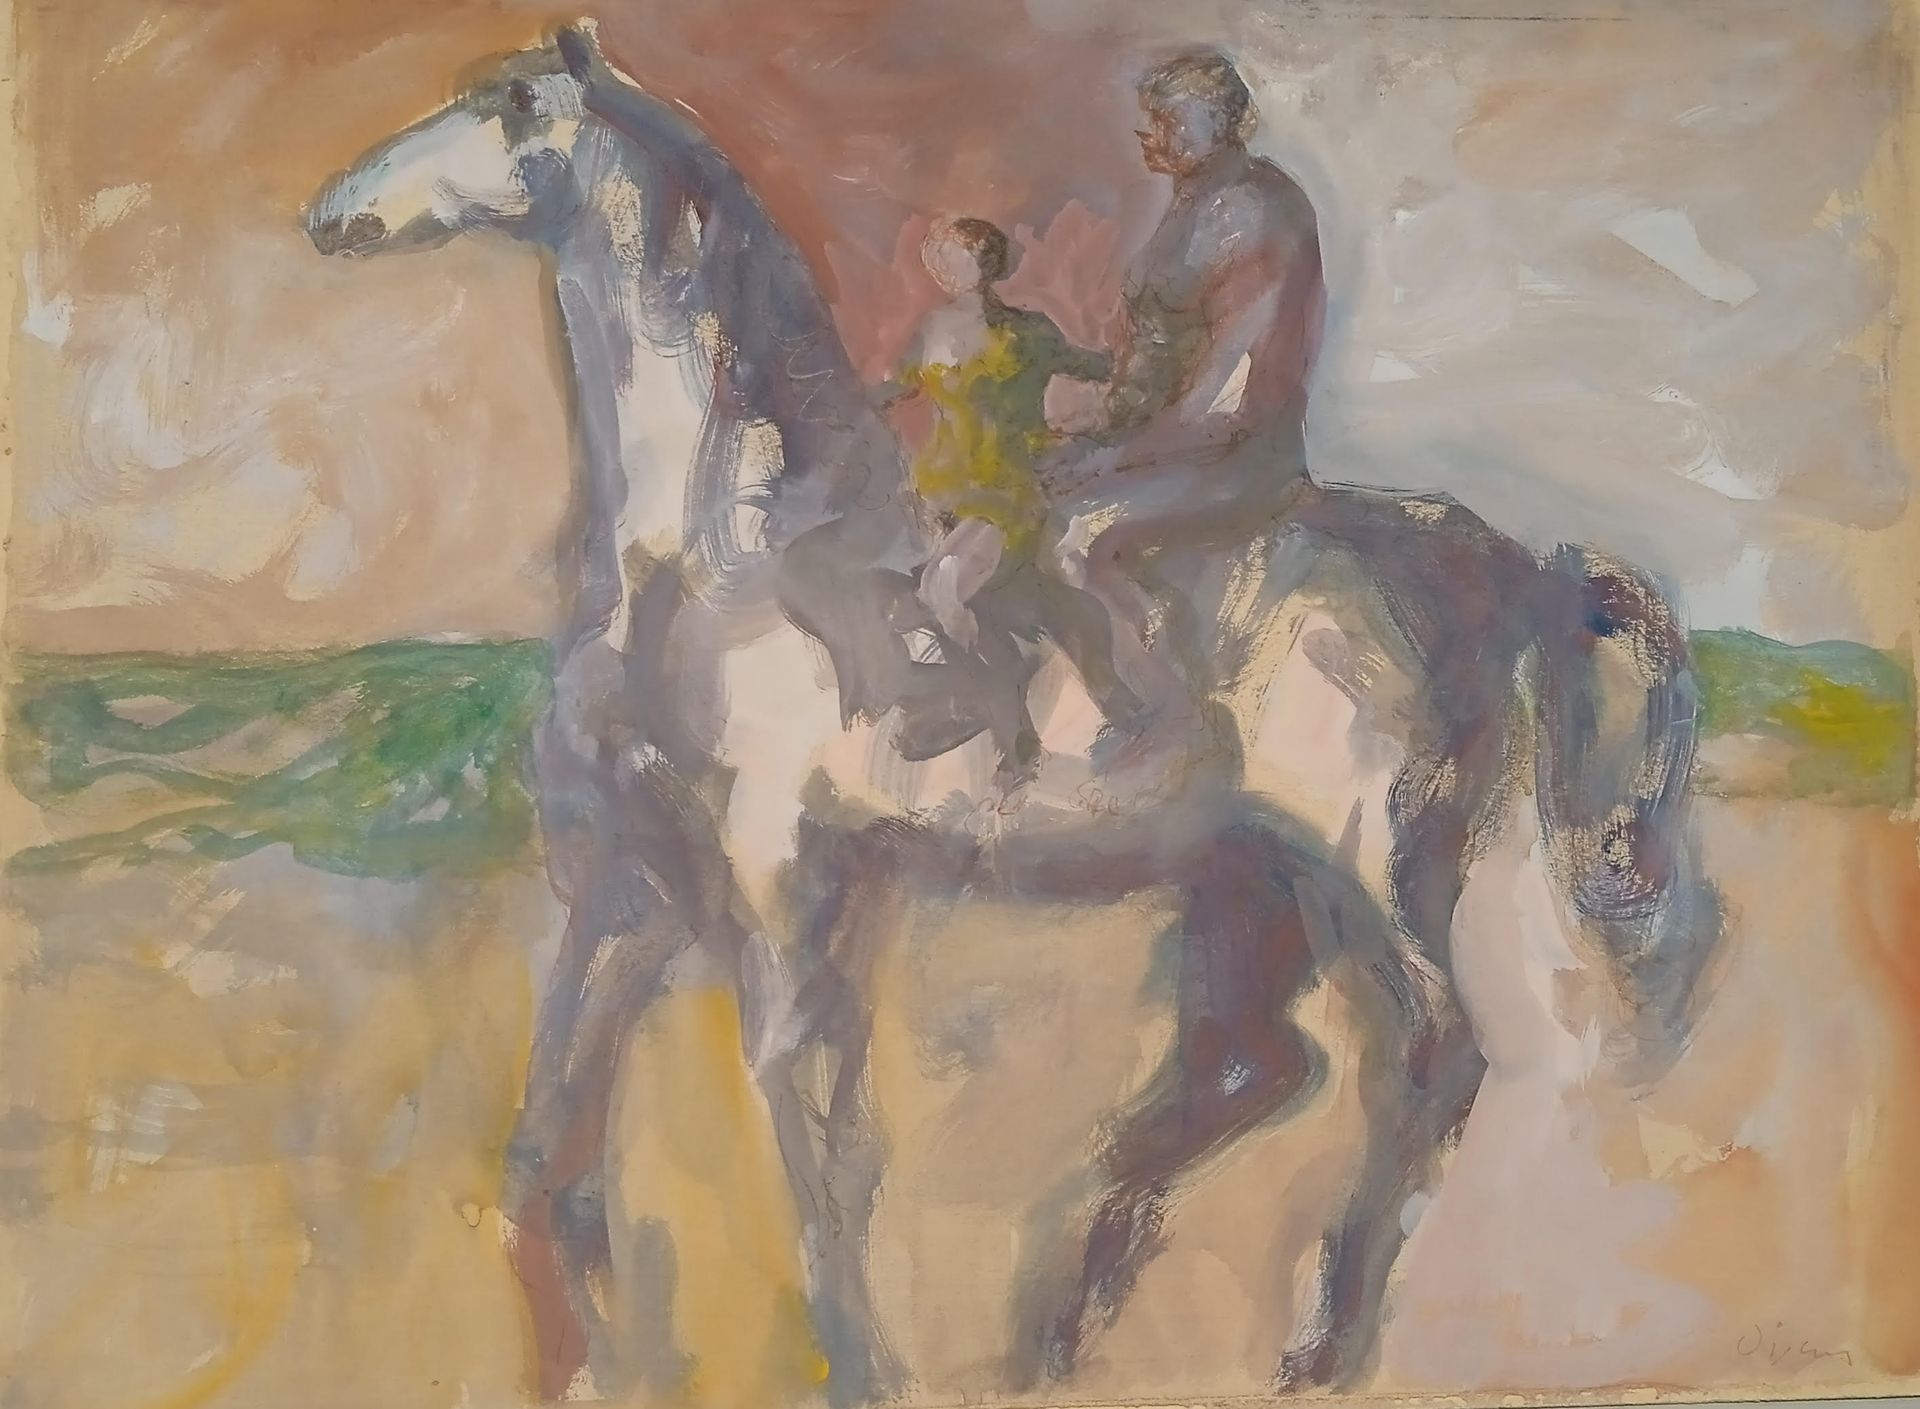 Null 西尔万-维尼 (1903-1970)

"海滩上的骑士"。

纸板上的水彩和水粉画

右下方有签名

50 x 65厘米